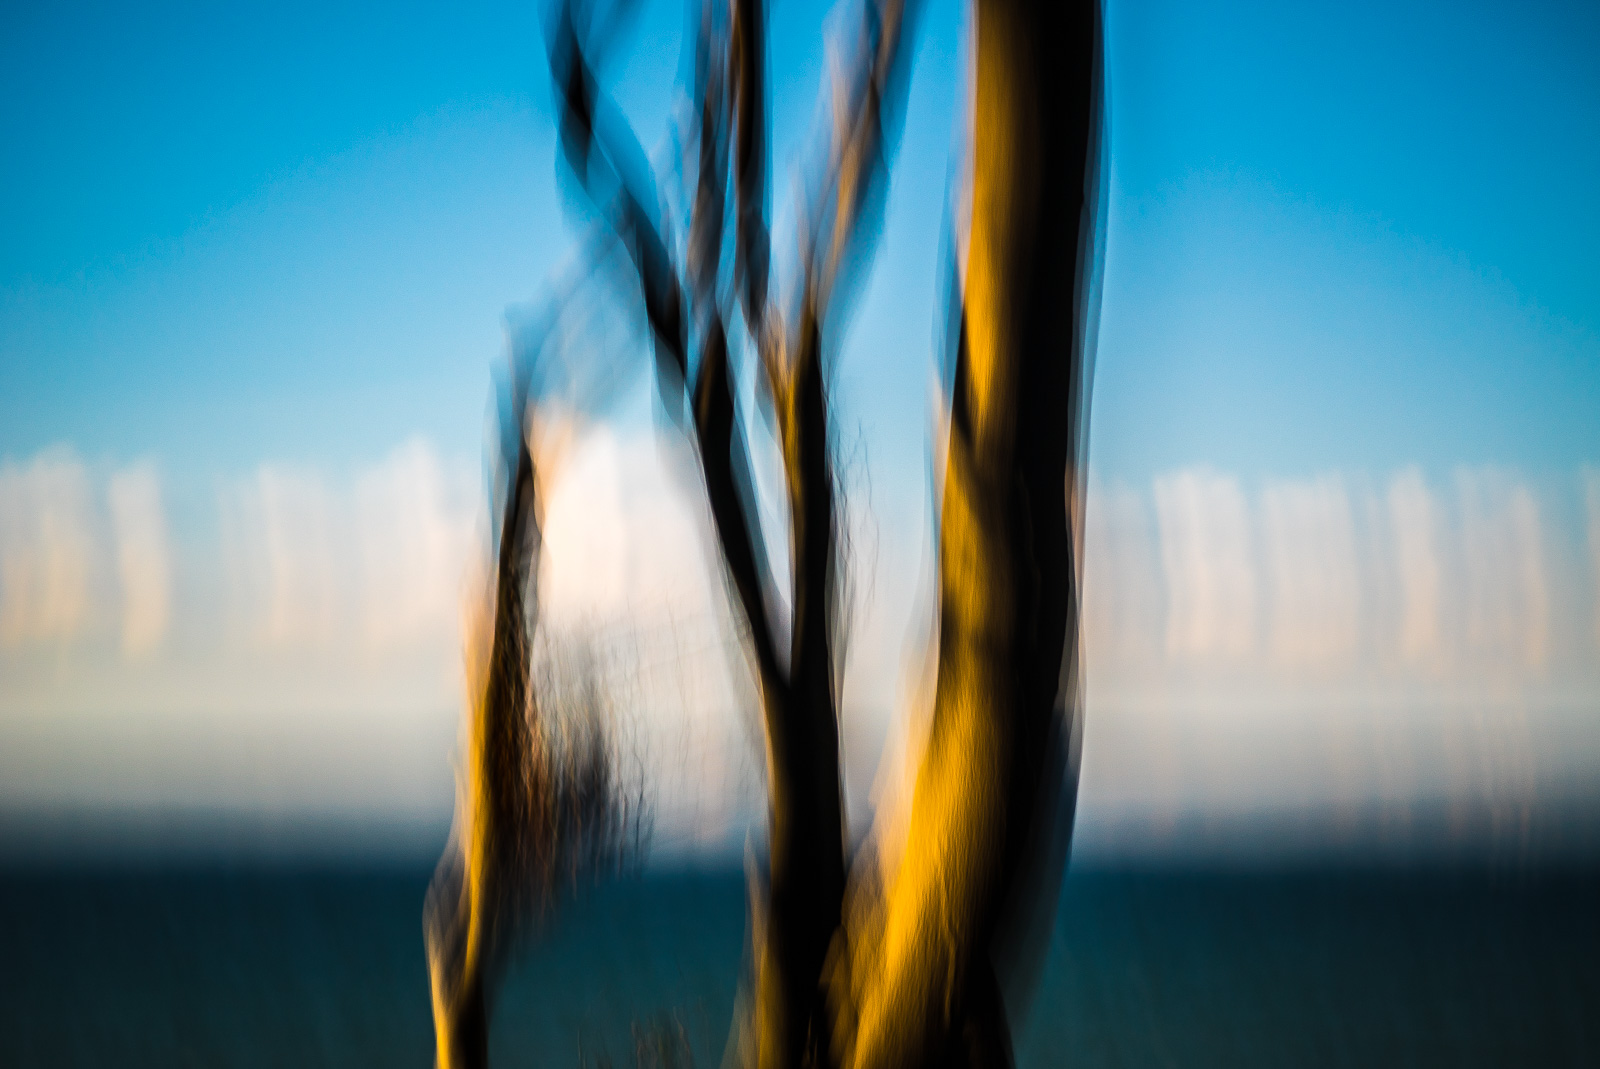 Baum im Seitenlicht vor blauem Himmel, durch Bewegung der Kamera stark verwischt